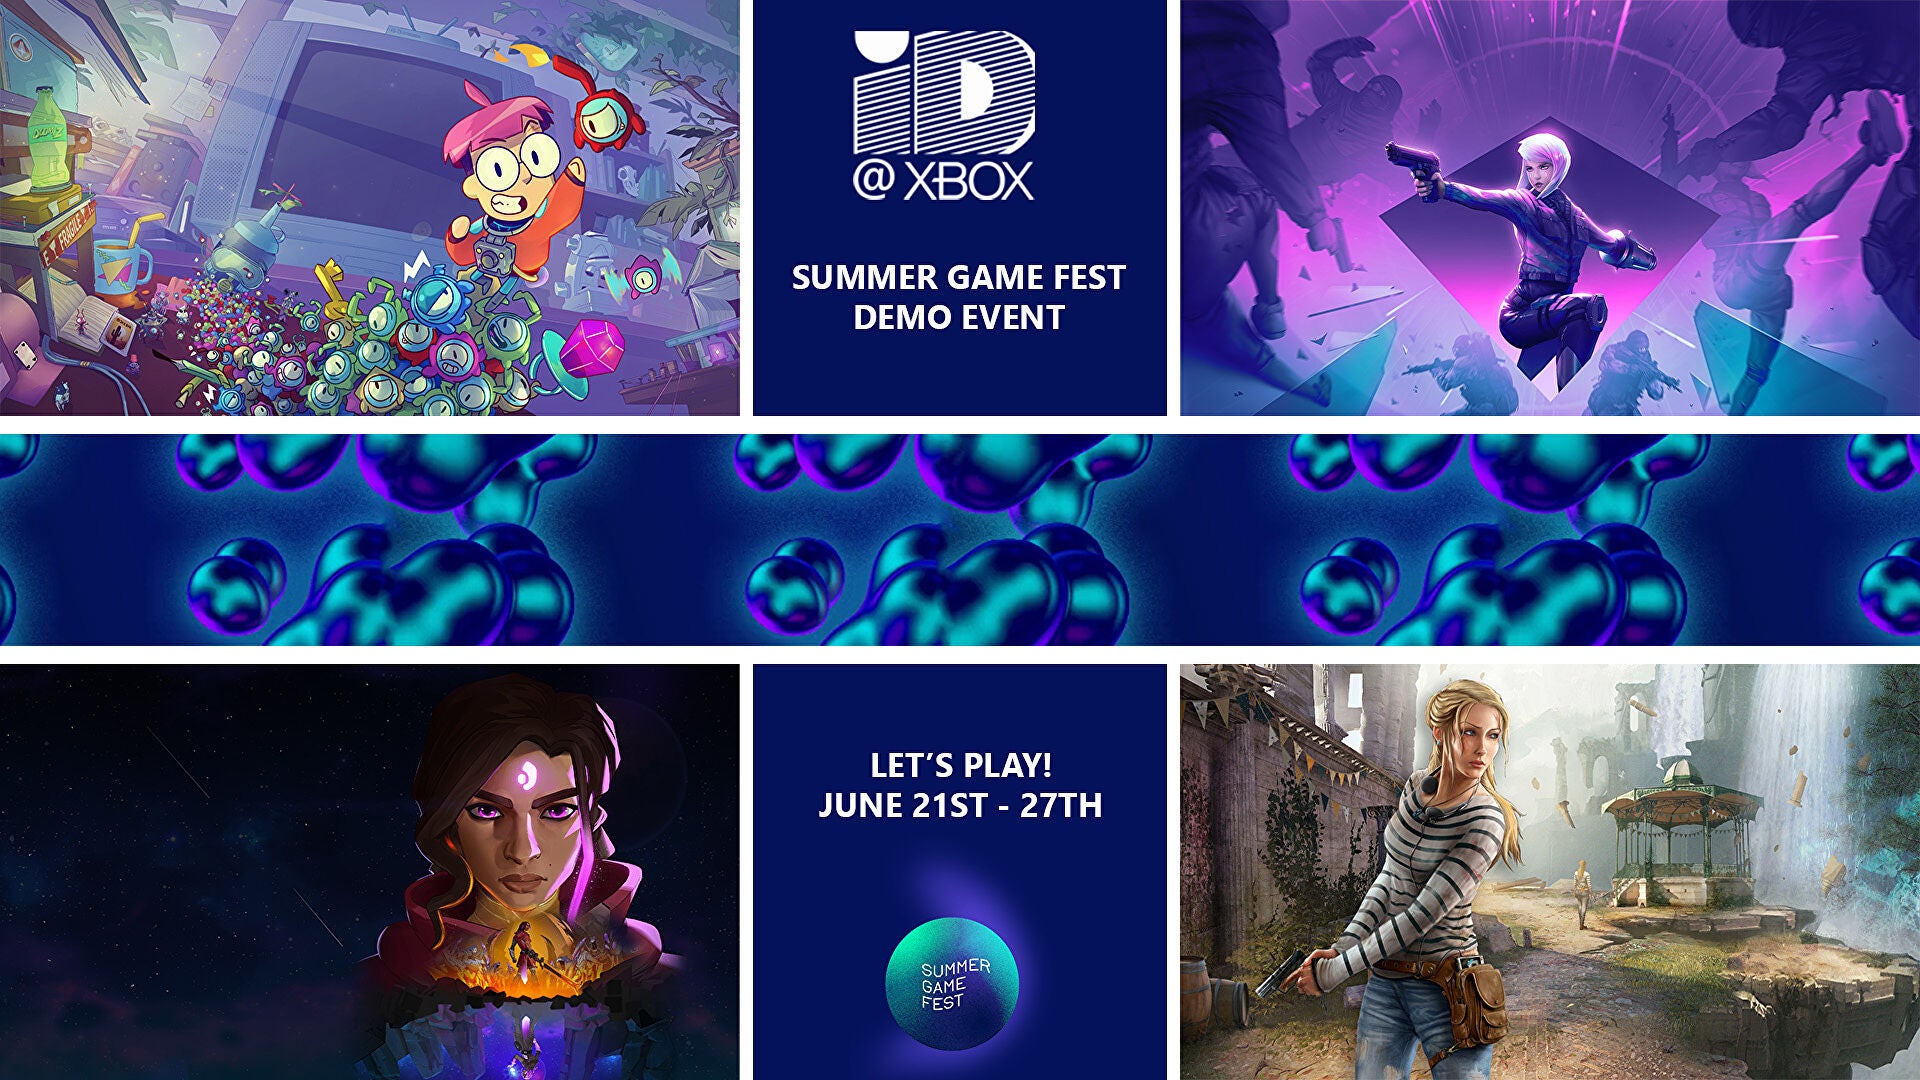 Imagen para El evento ID@Xbox Summer Game Fest Demo nos permitirá probar juegos en desarrollo en consolas Xbox